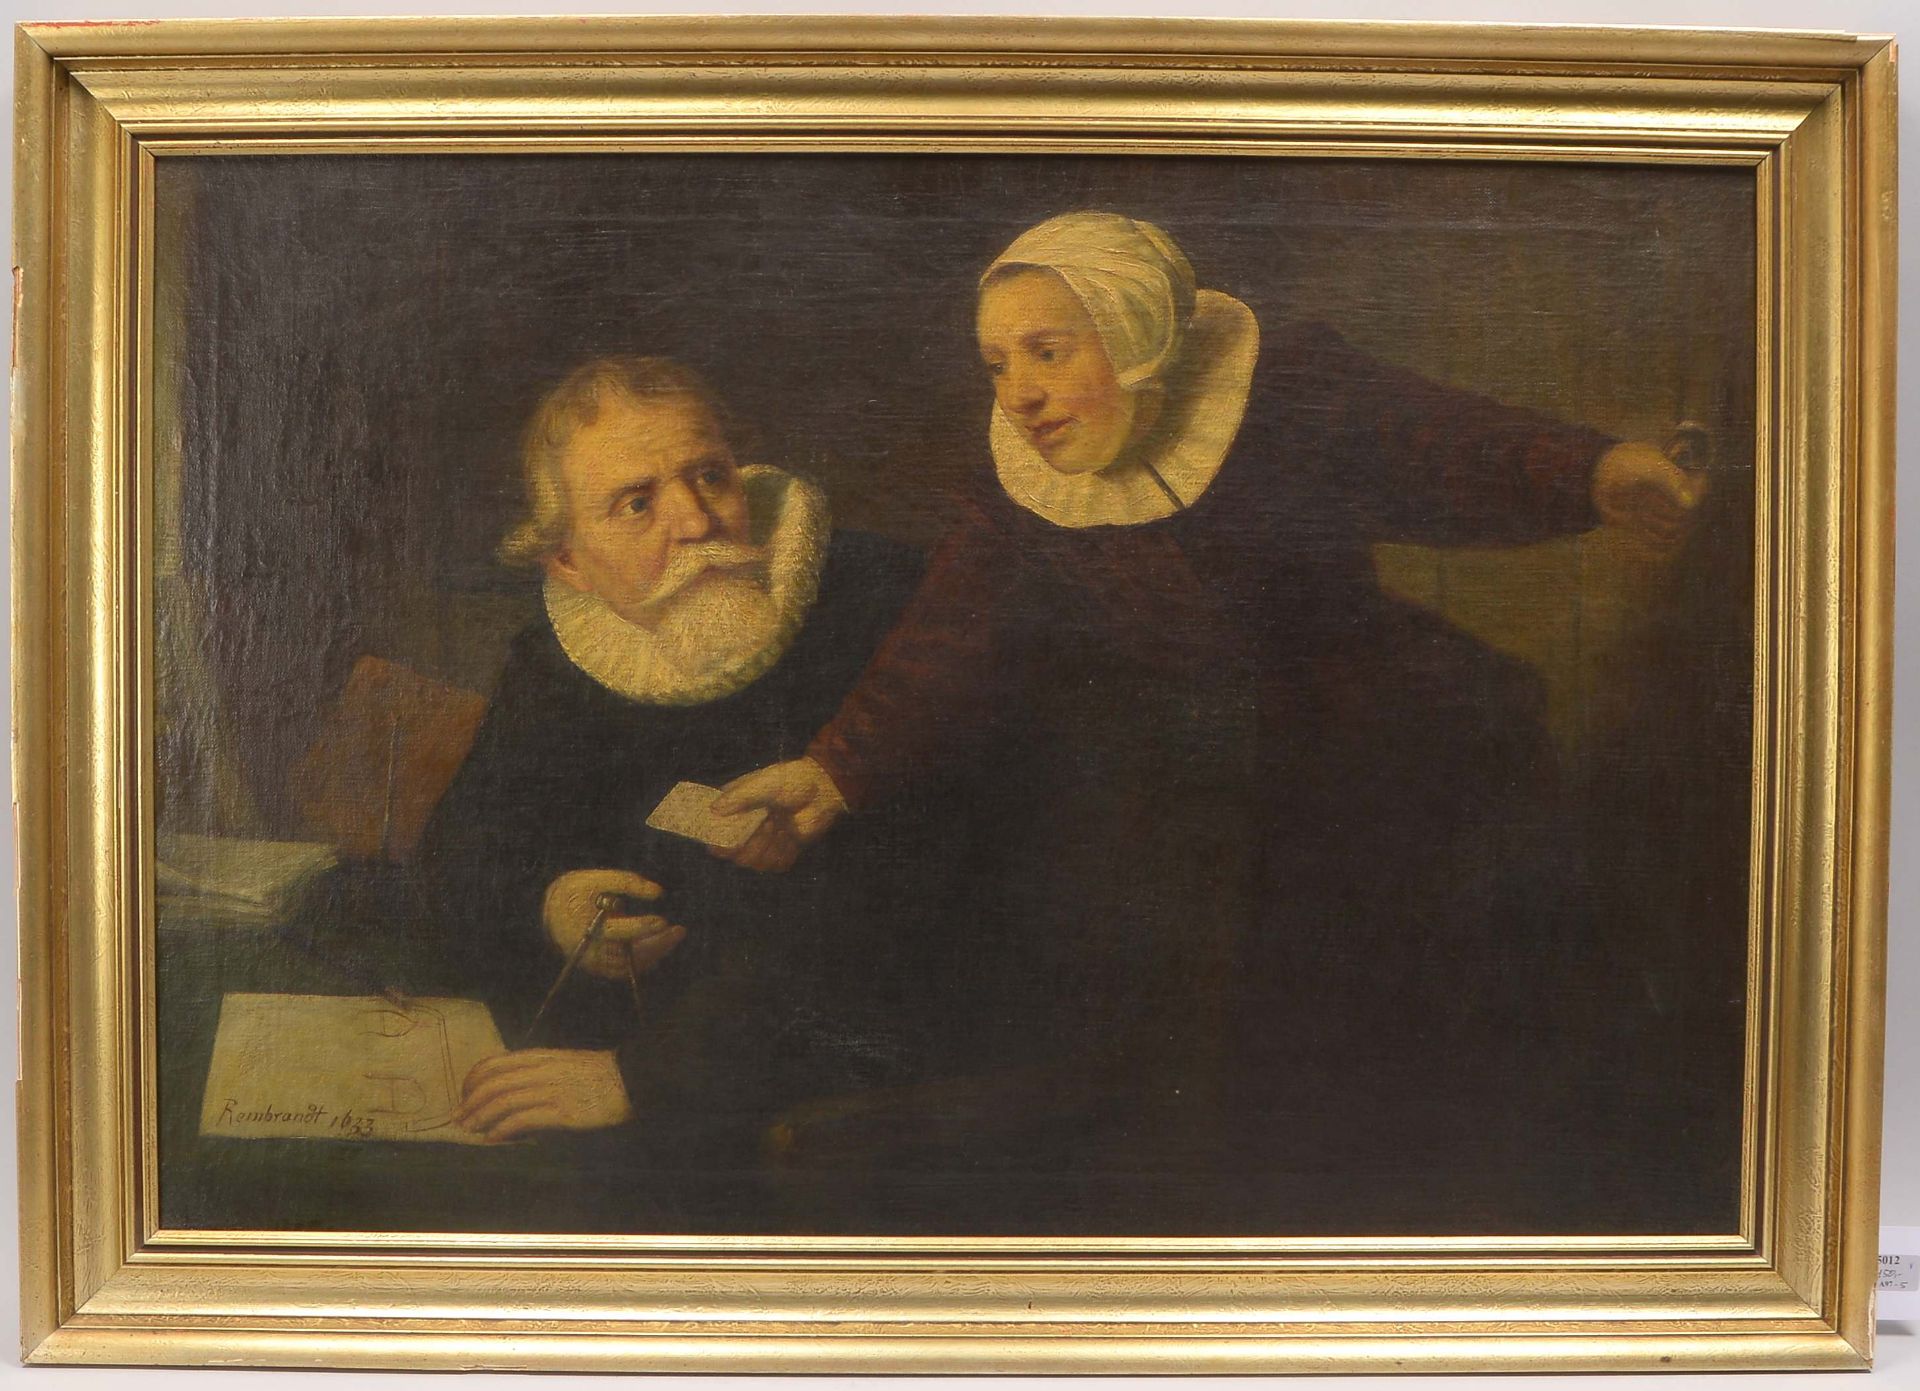 Altes Gemaelde (cop. nach Rembrandt 1633), -Der Schiffbauer Jan Rijksen und seine Frau Griet Jans-,